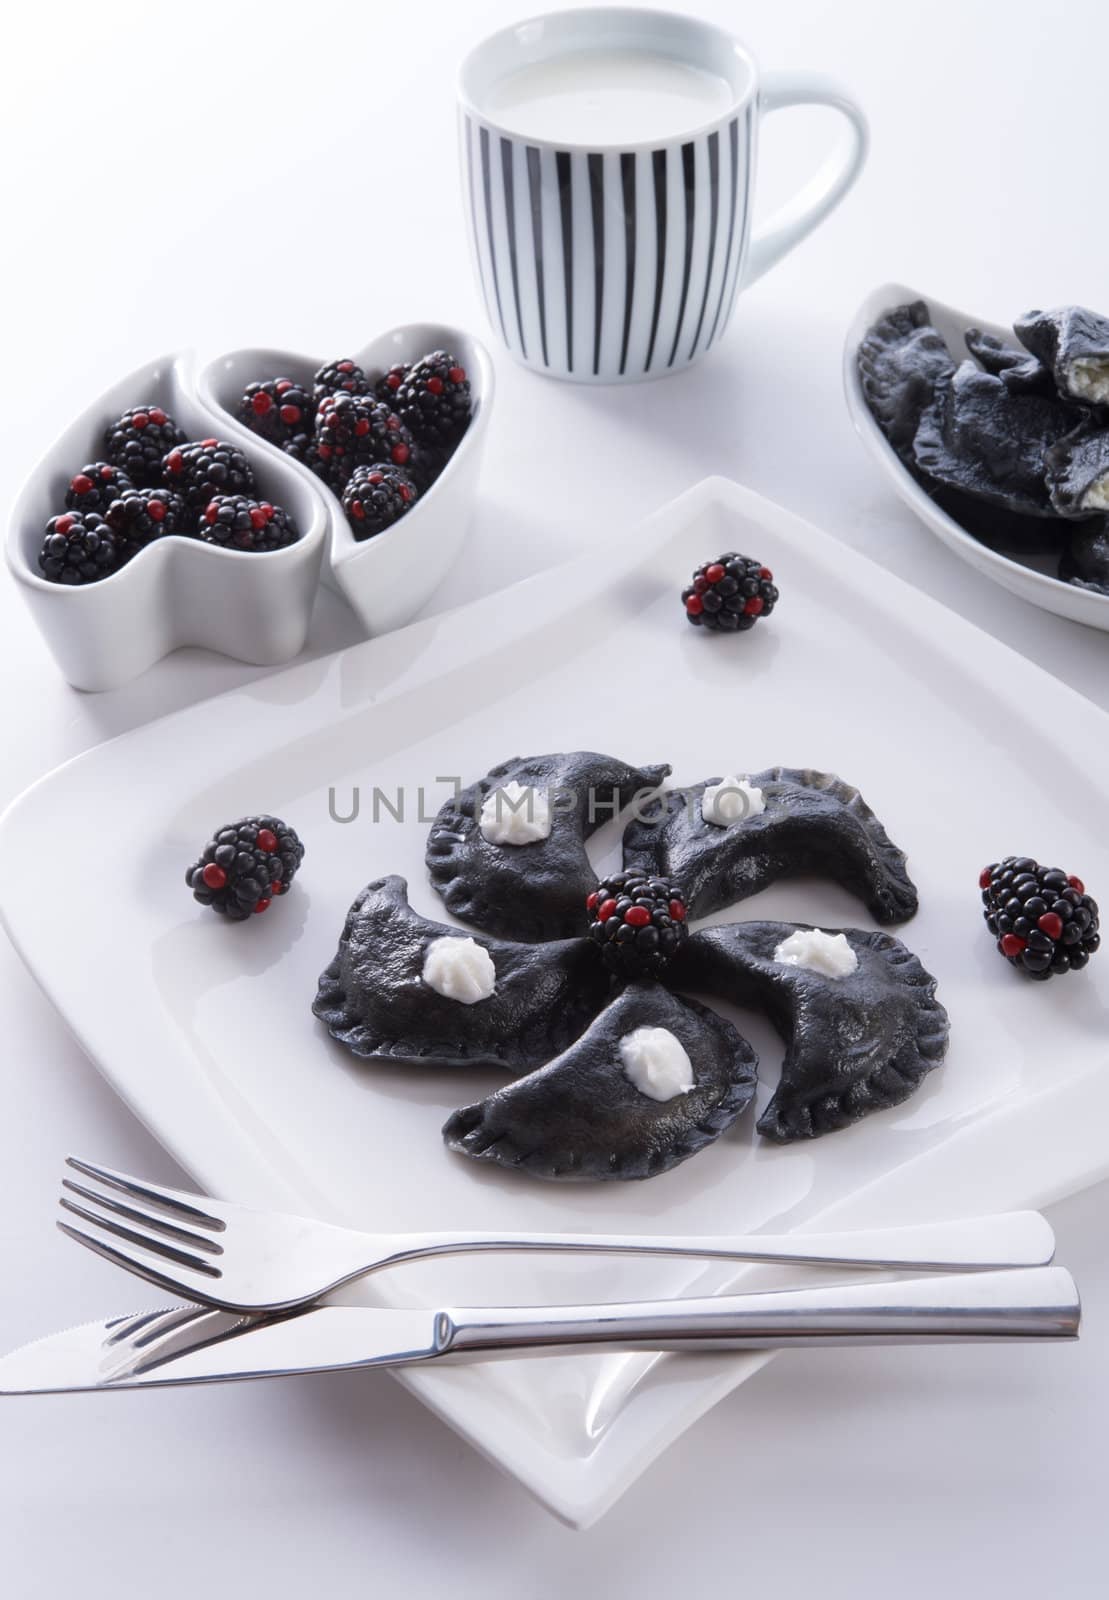 sweeten pierogi with blackberries - B & W by Darius.Dzinnik